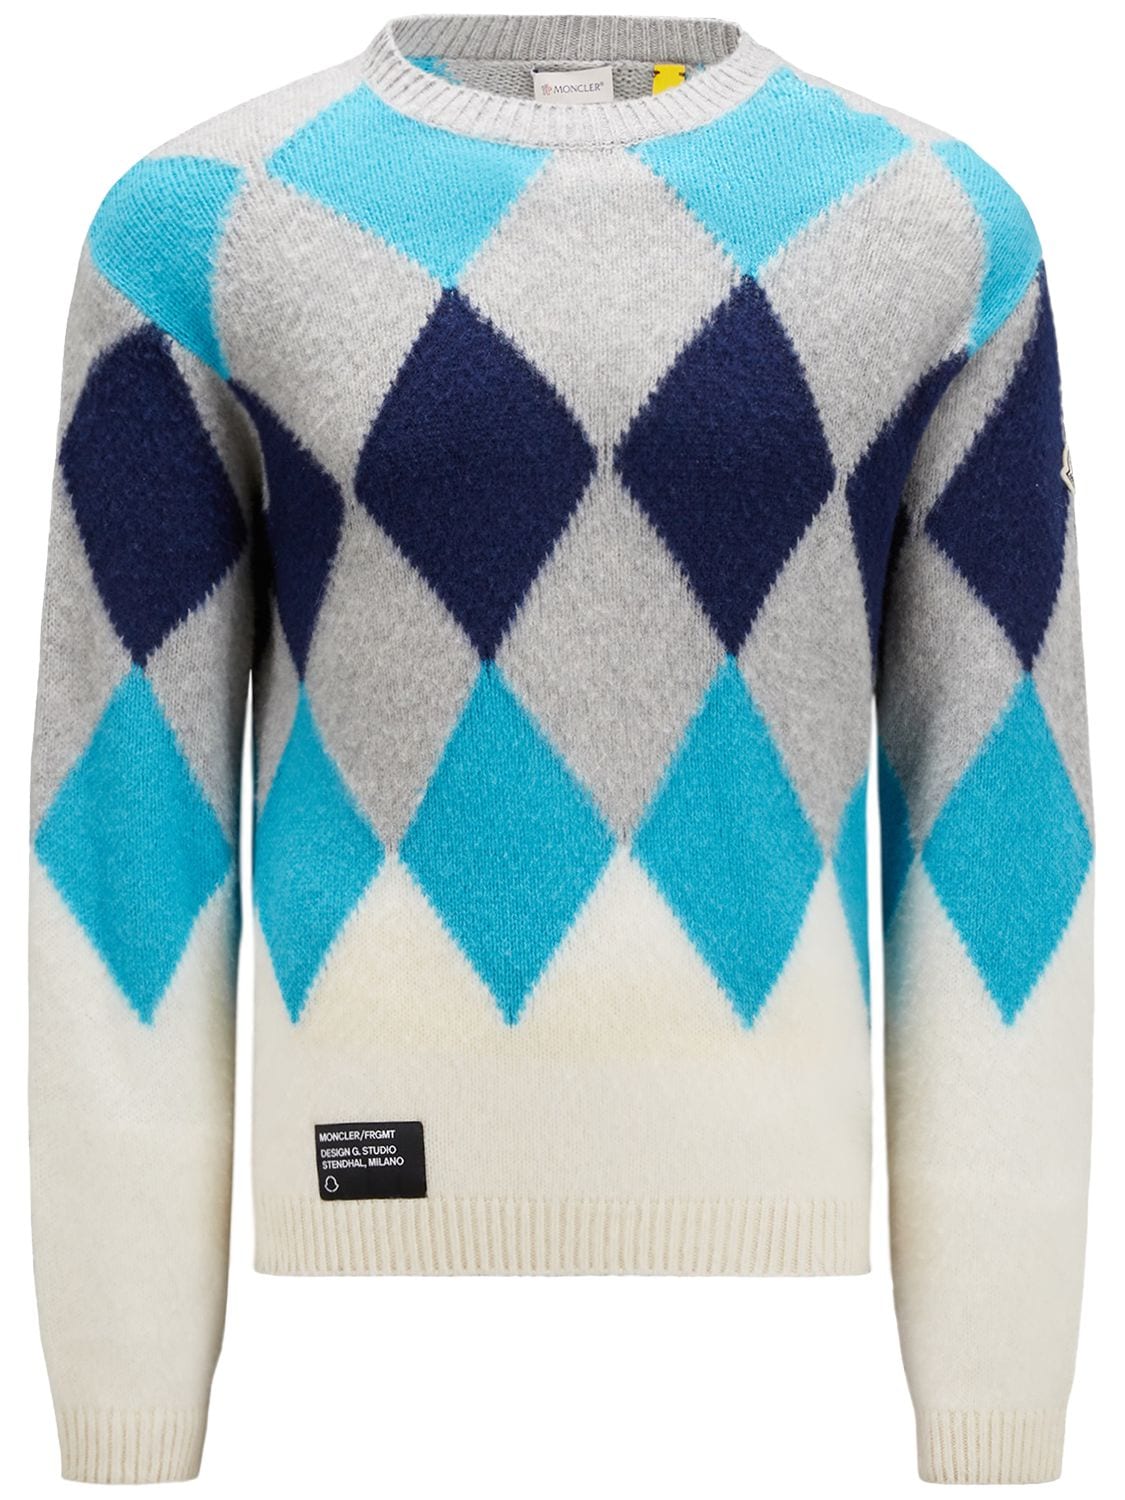 Moncler Genius Argyle Wool & Cashmere Jumper, Gender Neutral, Multicolour, Size: Xl In Blue,multi